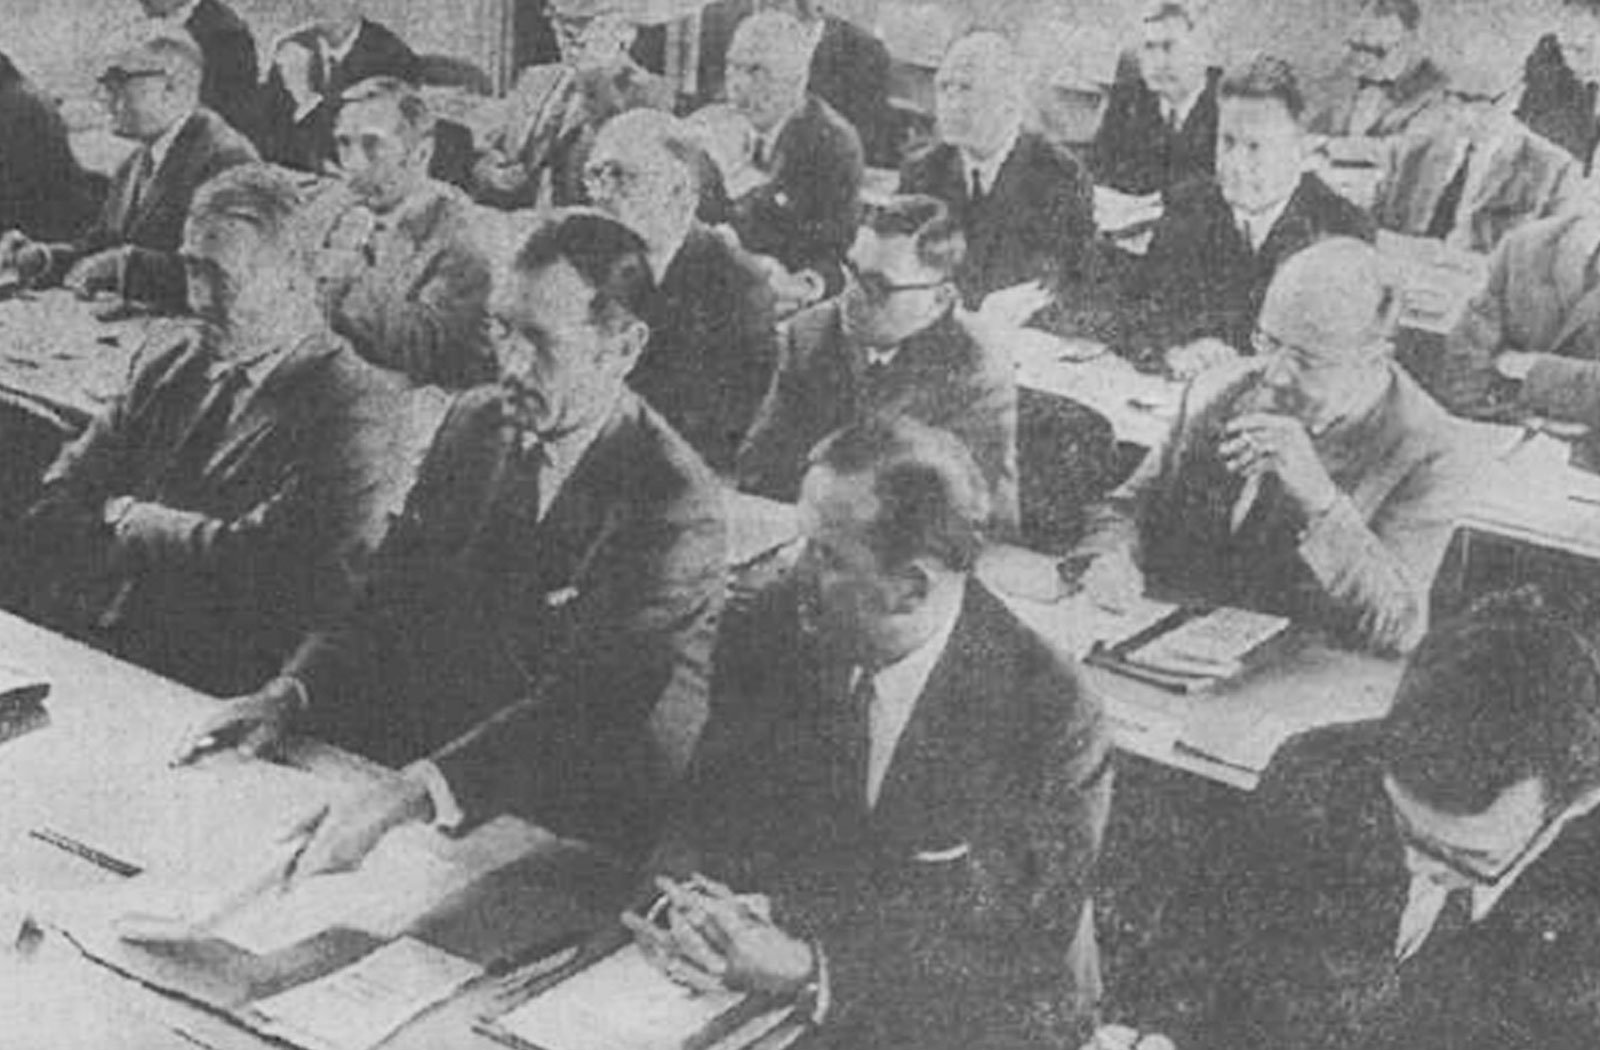 Une vingtaine d'hommes en costard sont assis pour écouter une conférence et prendre des notes.